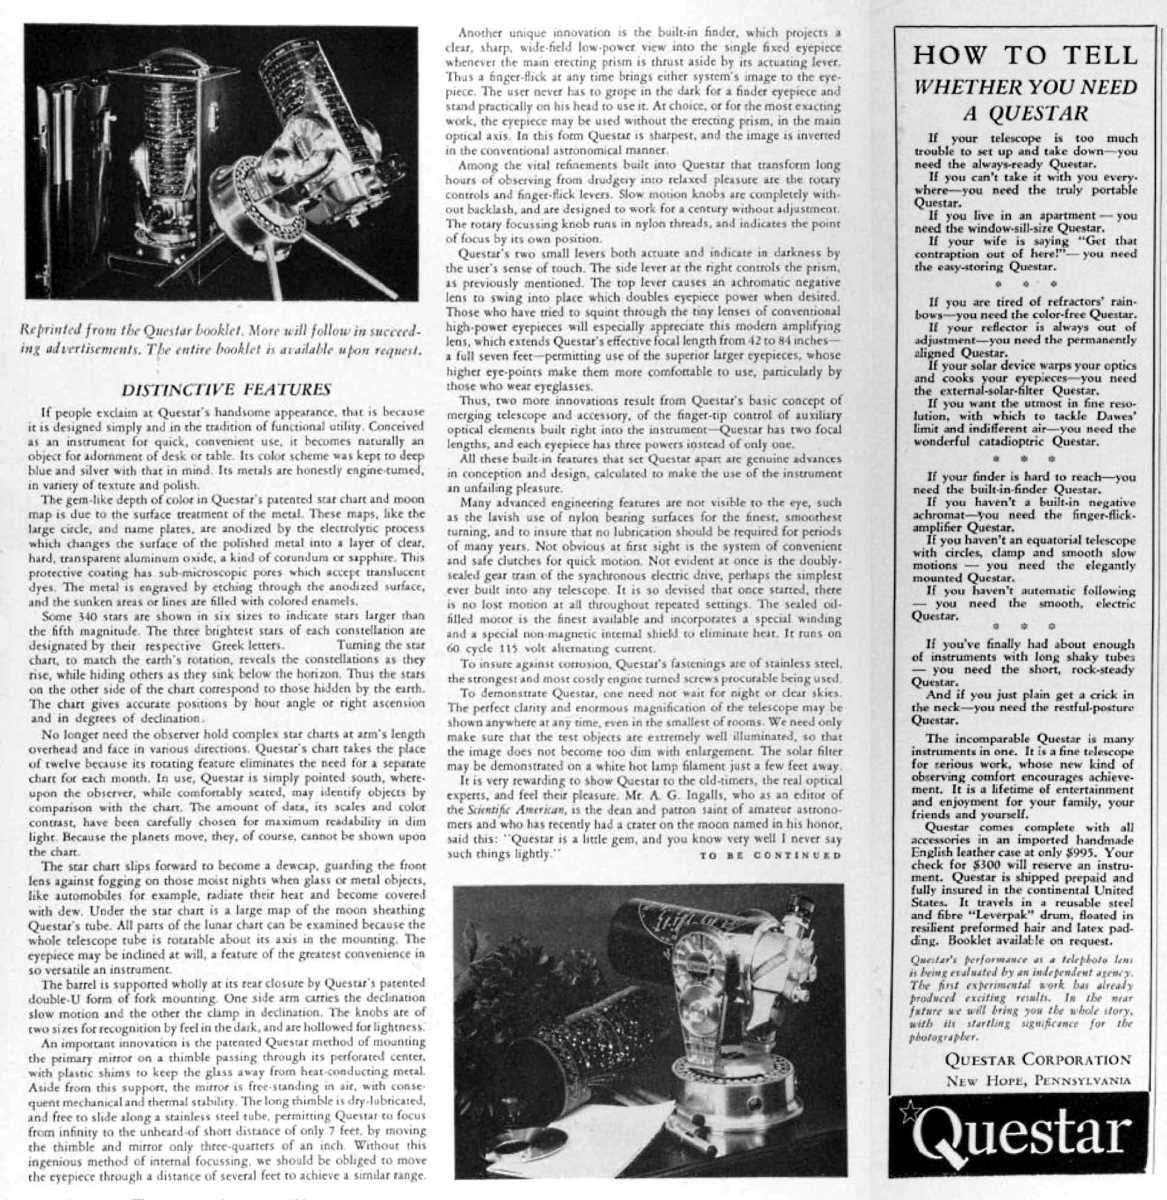 Questar advertisement, <em>Sky and Telescope</em>, January 1956